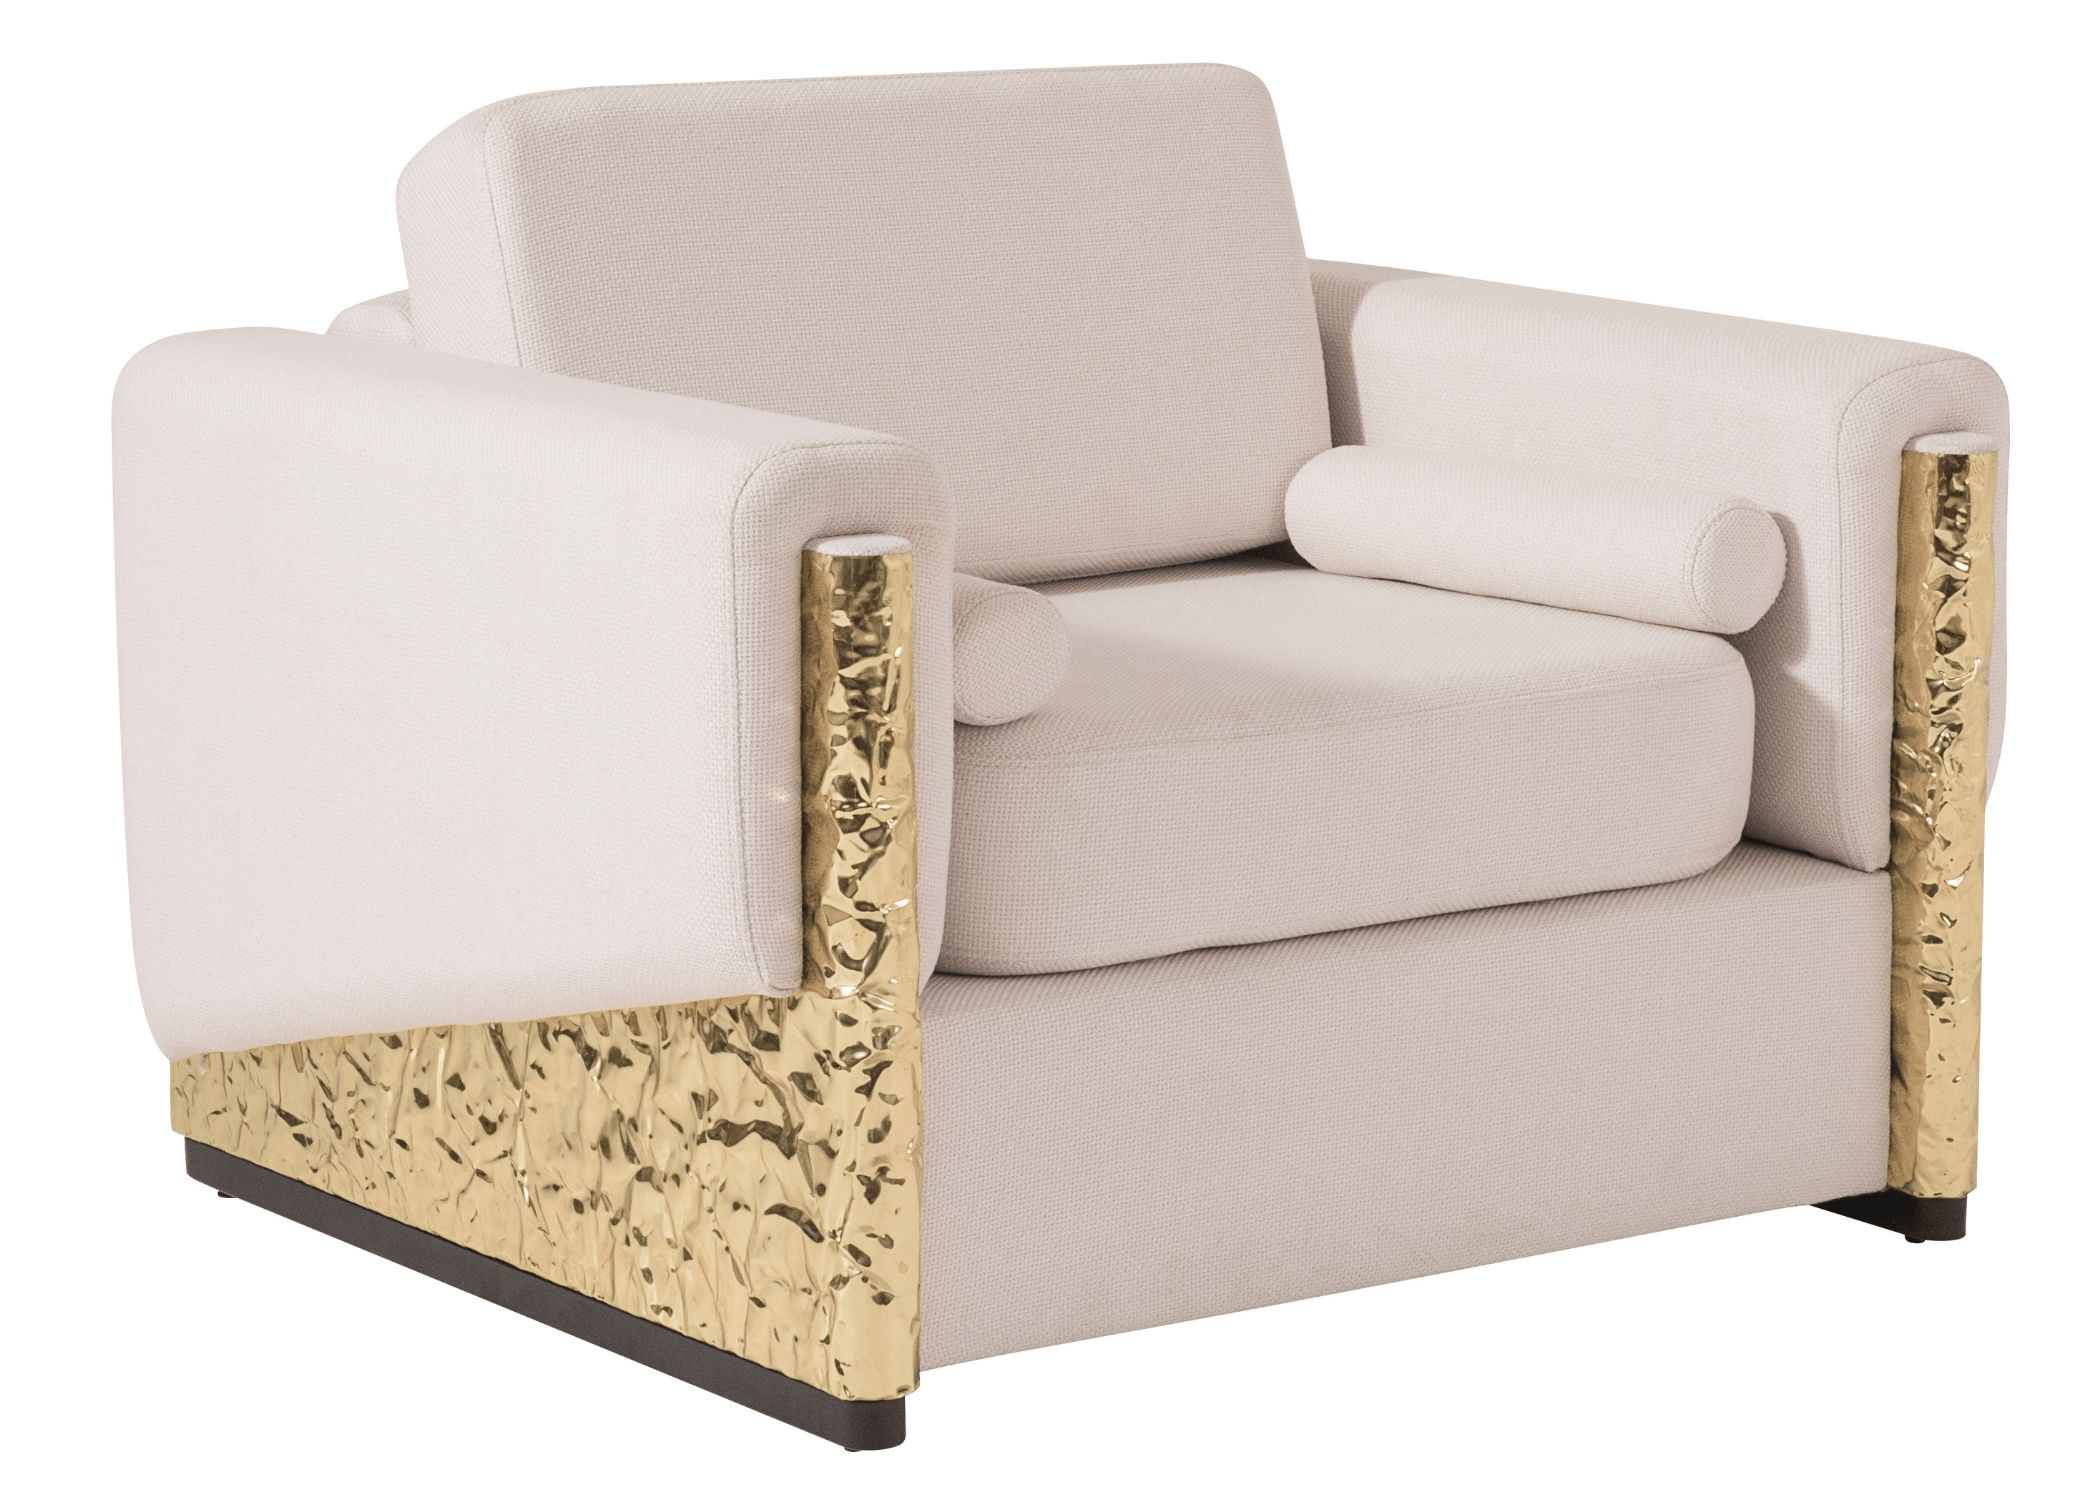 Poltrona sofisticada Luxor com braços em latão dourado e assento acolchoado, acompanhada por duas almofadas